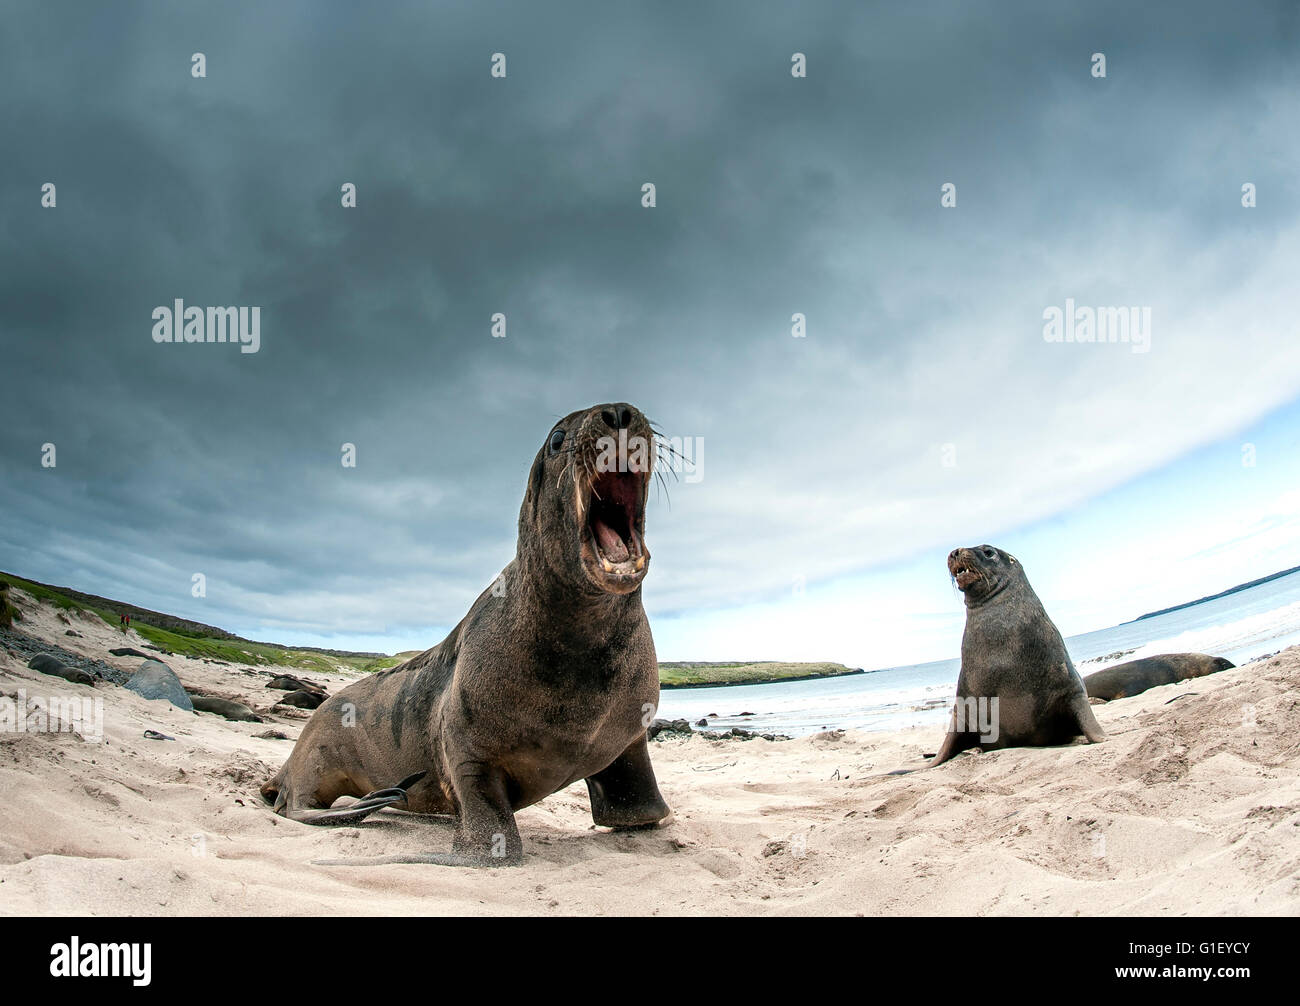 La Nouvelle Zélande ou Hooker's lions de mer (Phocarctos hookeri) sur la plage montrant un comportement agressif Enderby island Nouvelle Zélande Banque D'Images